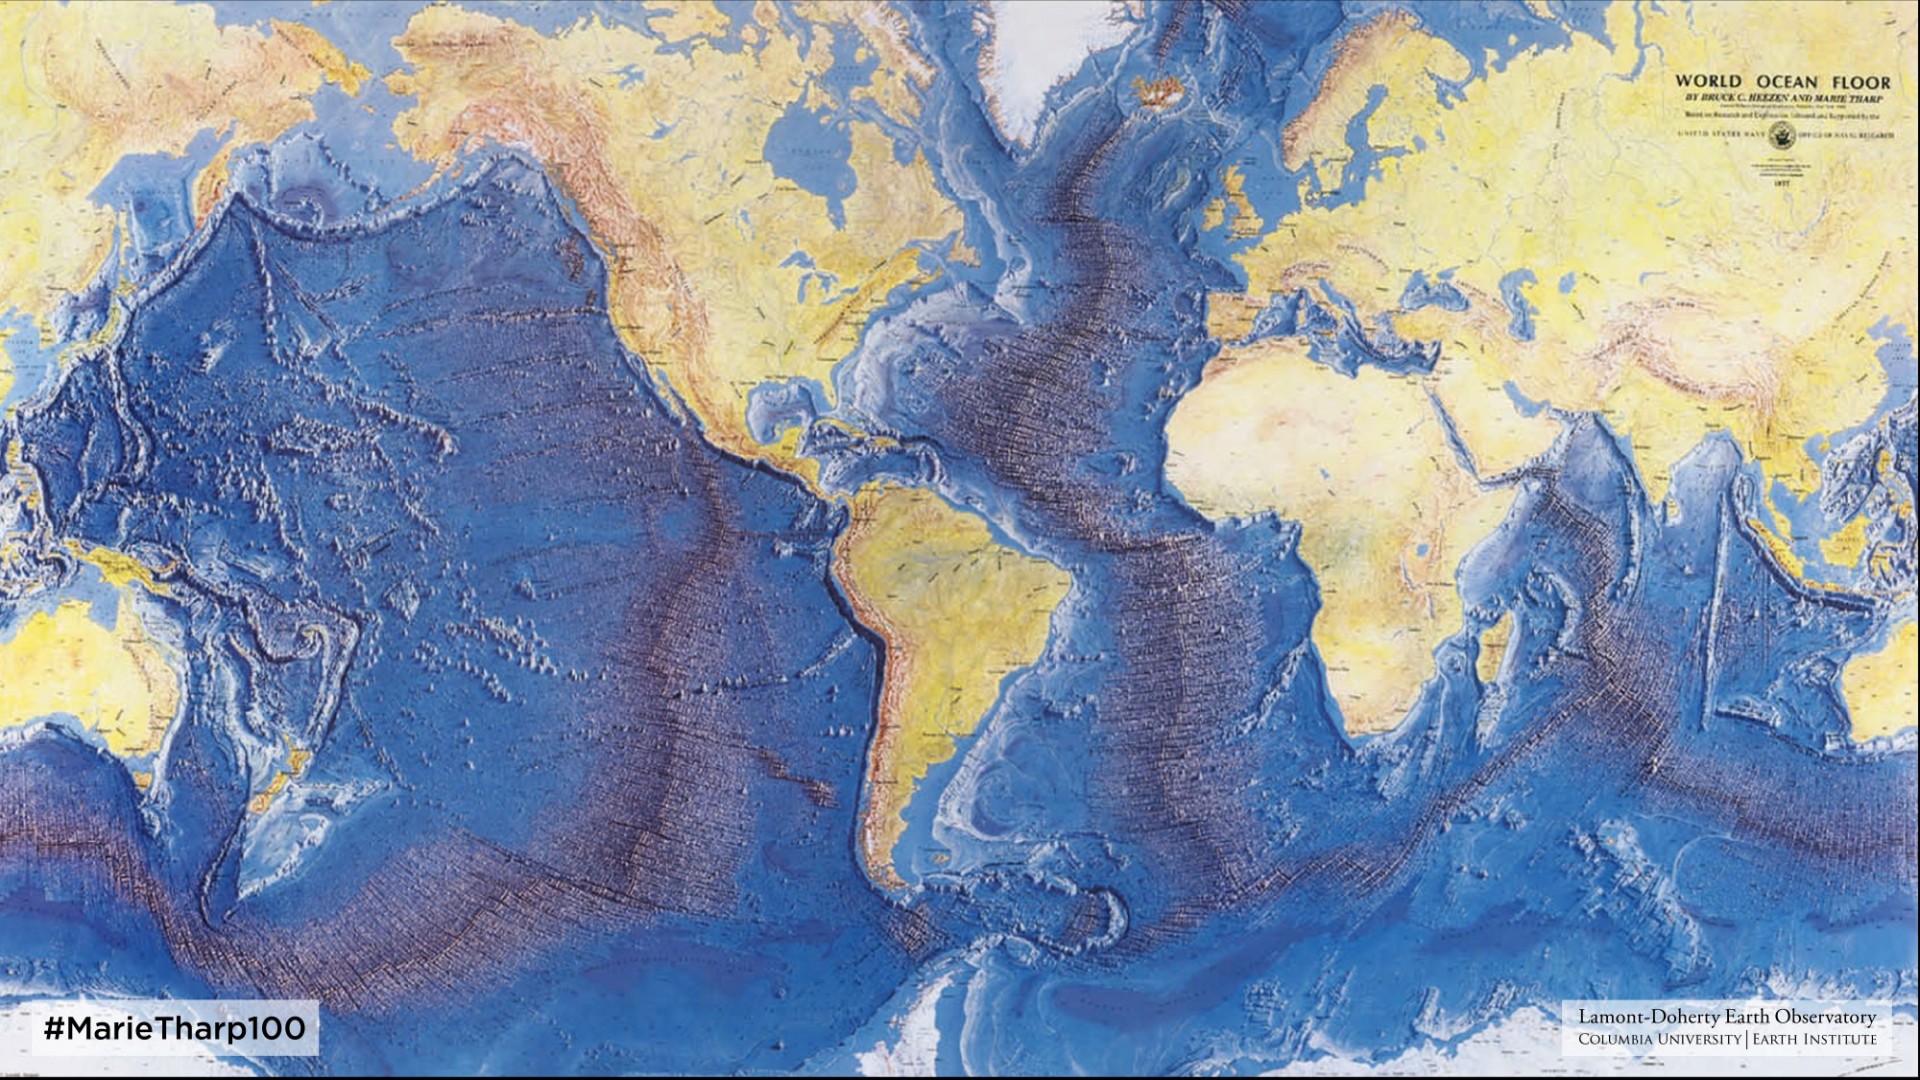 World Ocean Floor Map (1977) by Heezen & Tharp